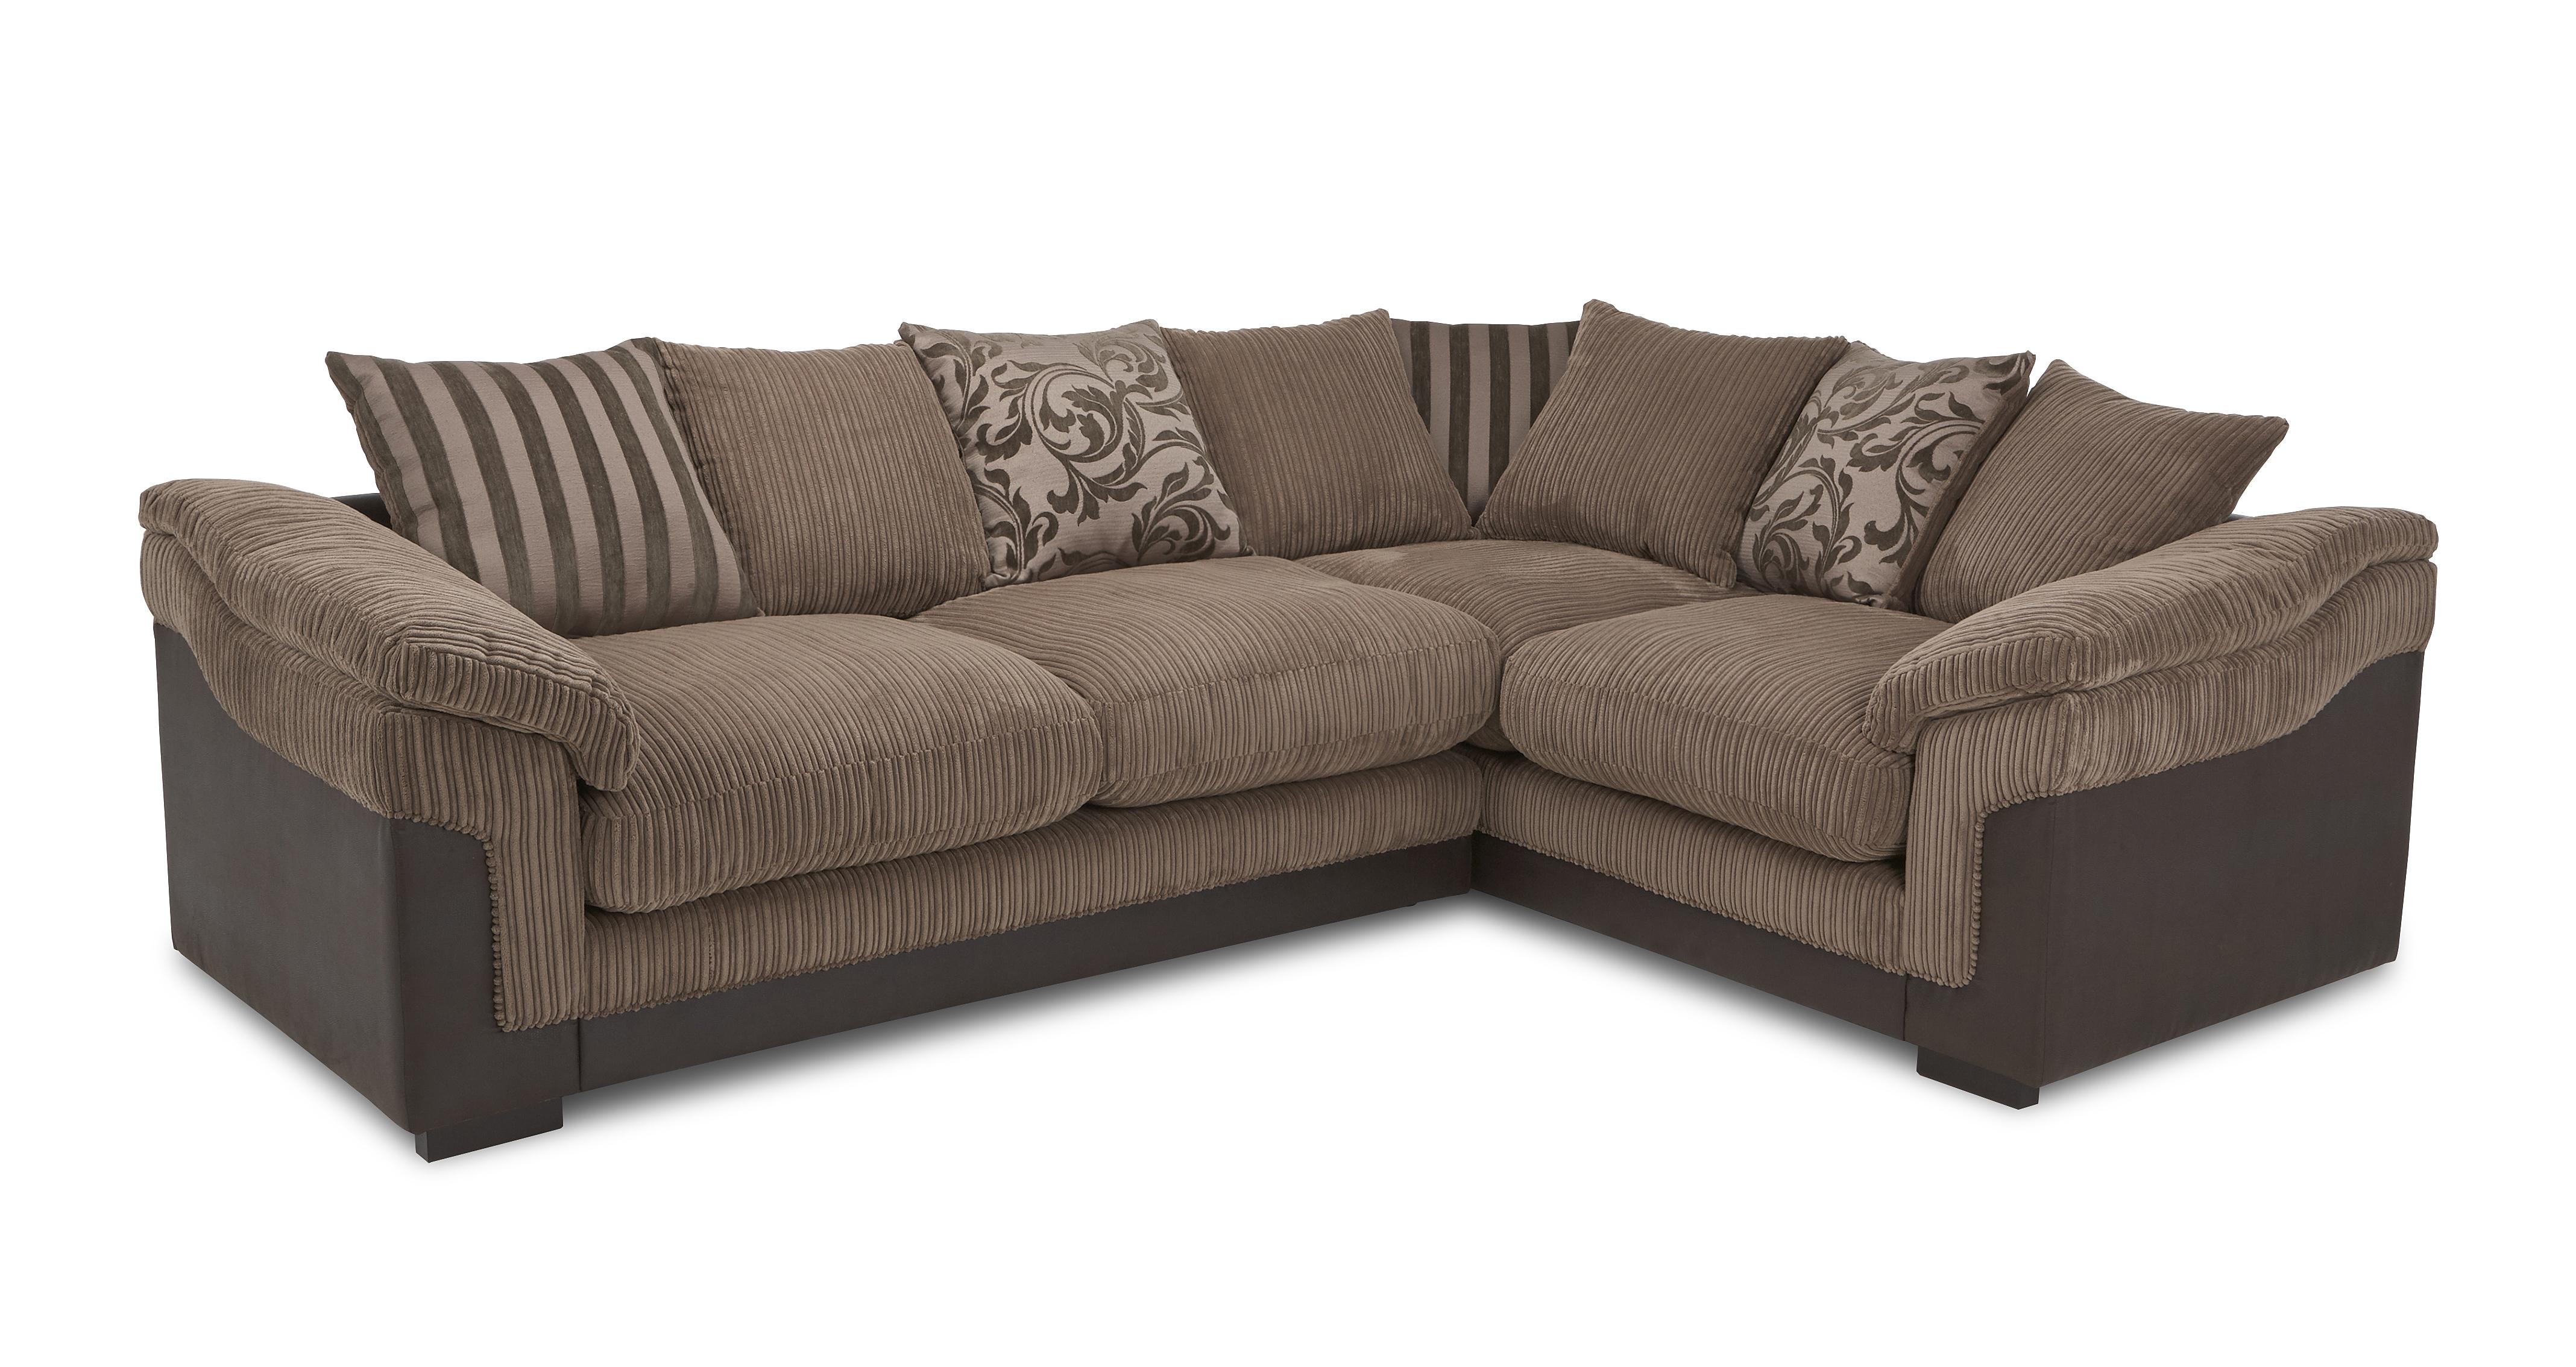 brown fabric corner sofa bed